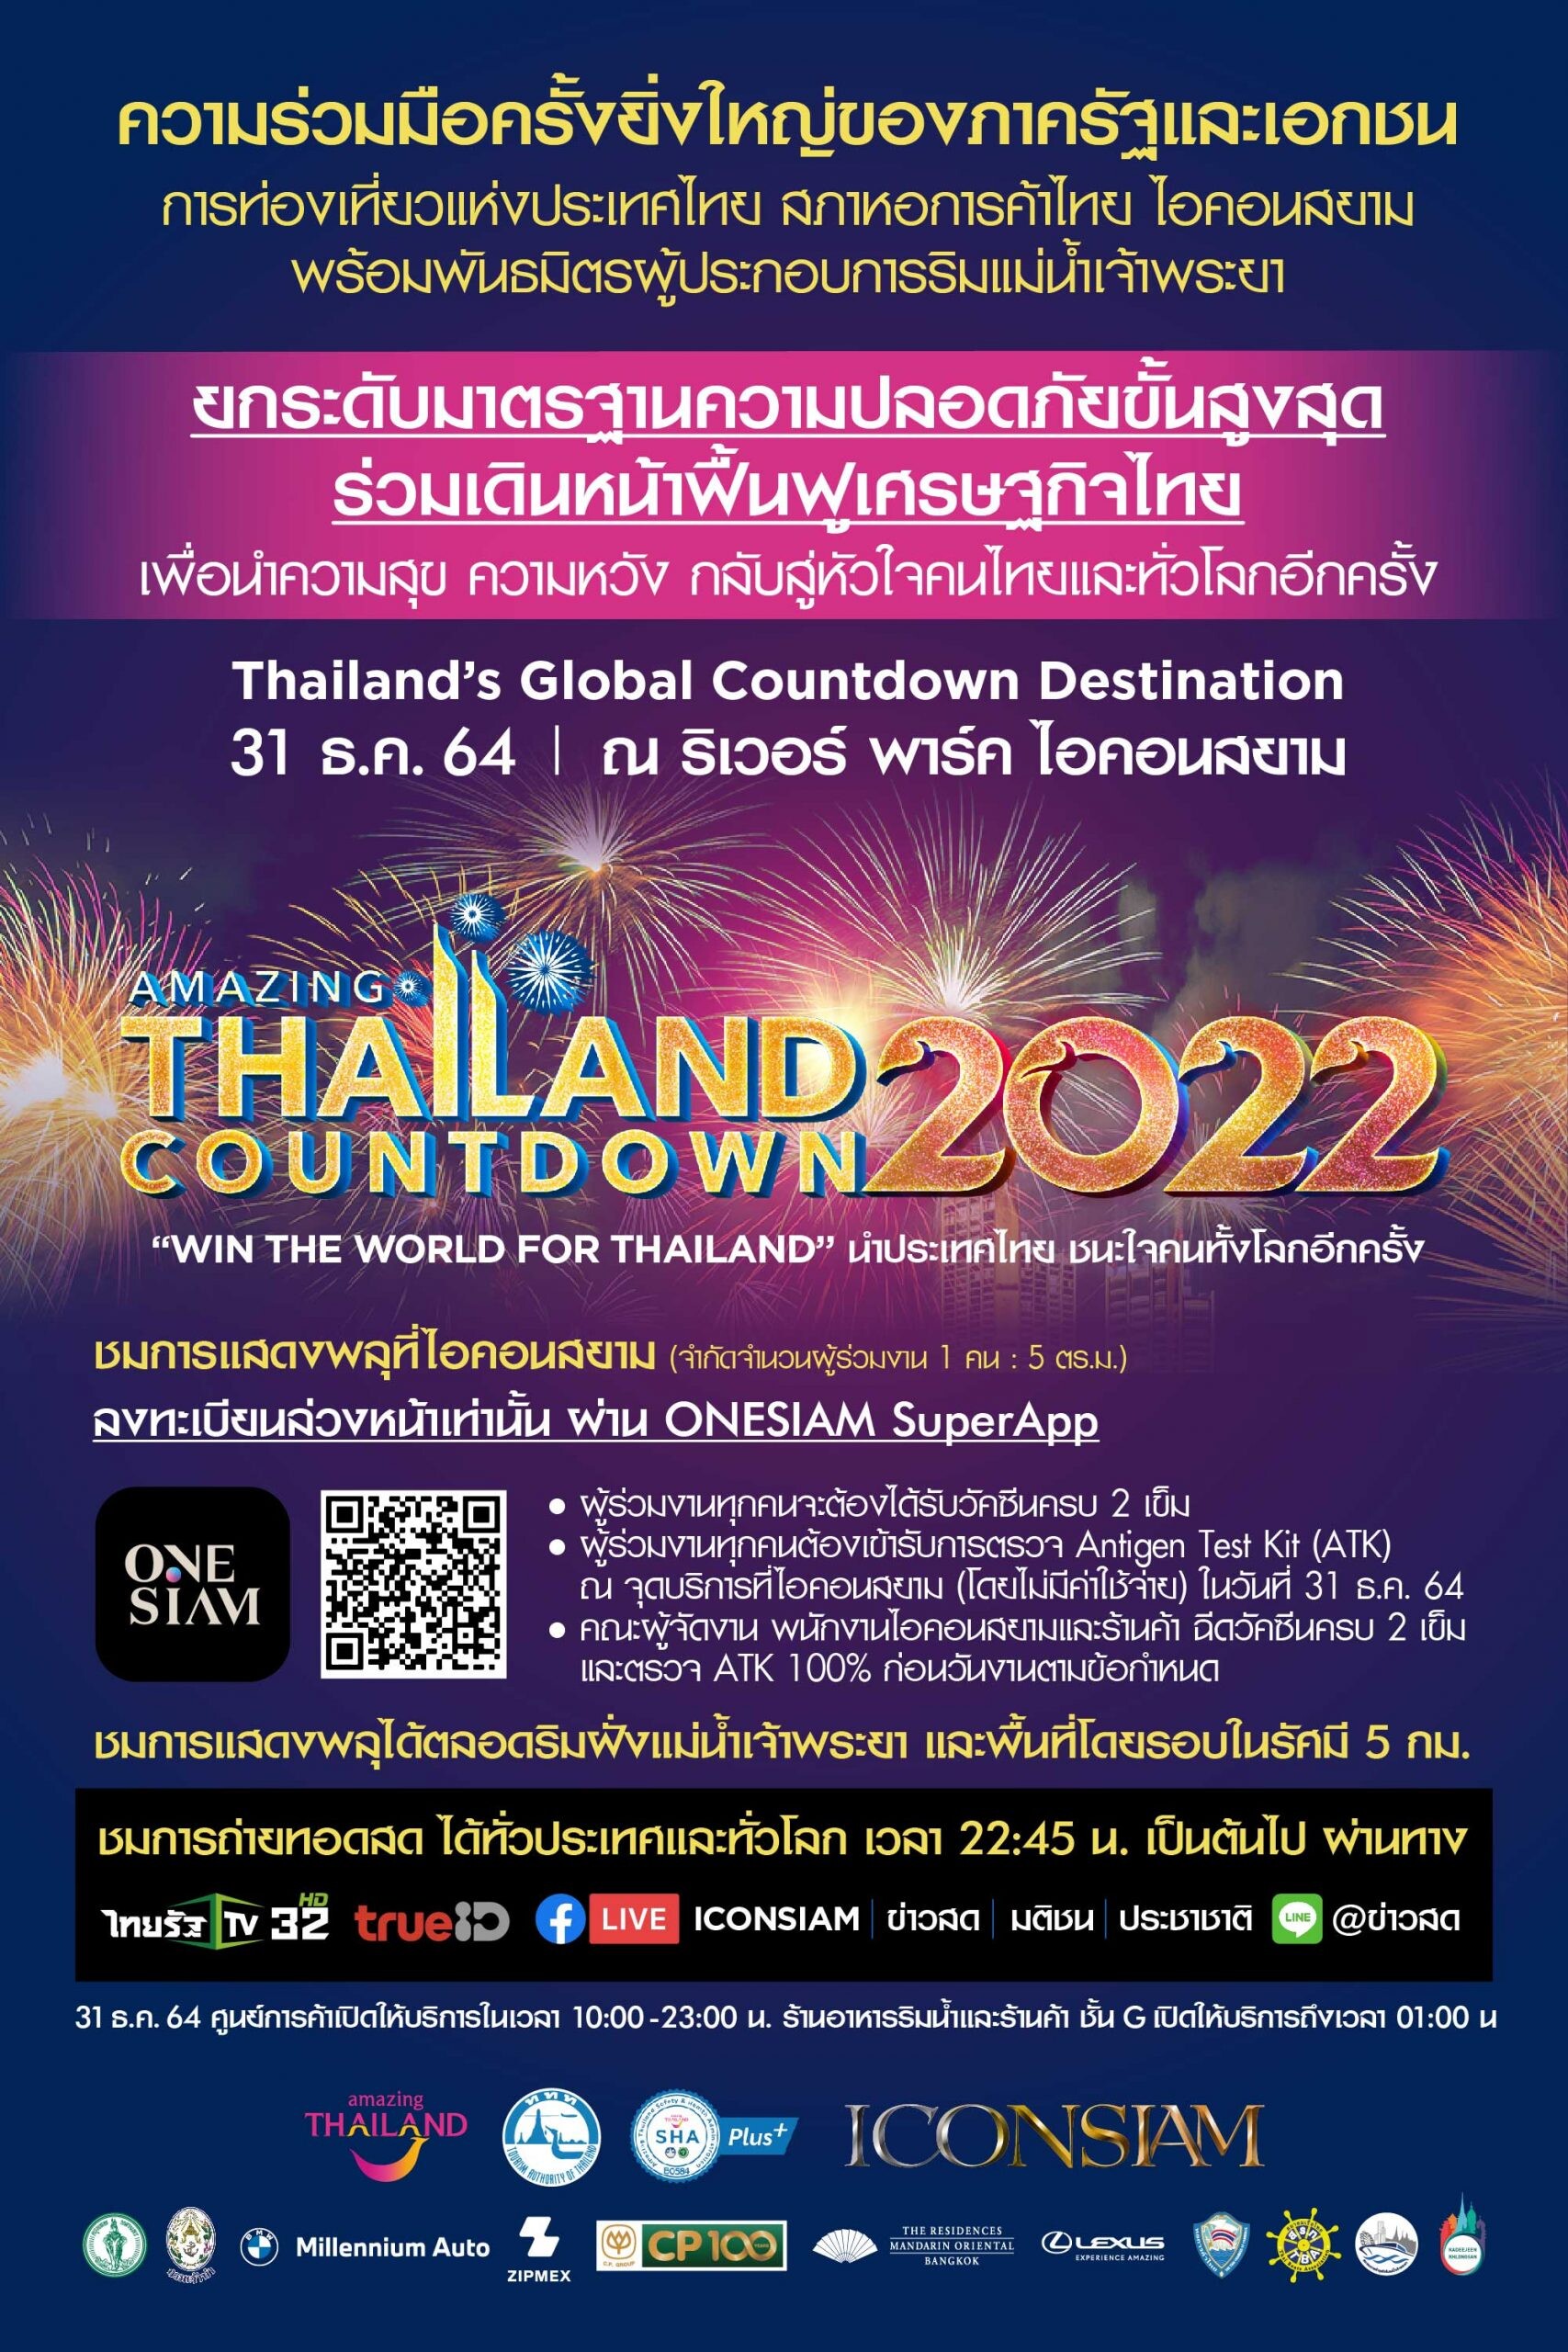 'ไอคอนสยาม' ผนึกกำลังภาครัฐและเอกชน จัดงานเคาท์ดาวน์ระดับโลก Amazing Thailand Countdown 2022 ยกระดับมาตรฐานความปลอดภัยขั้นสูงสุด